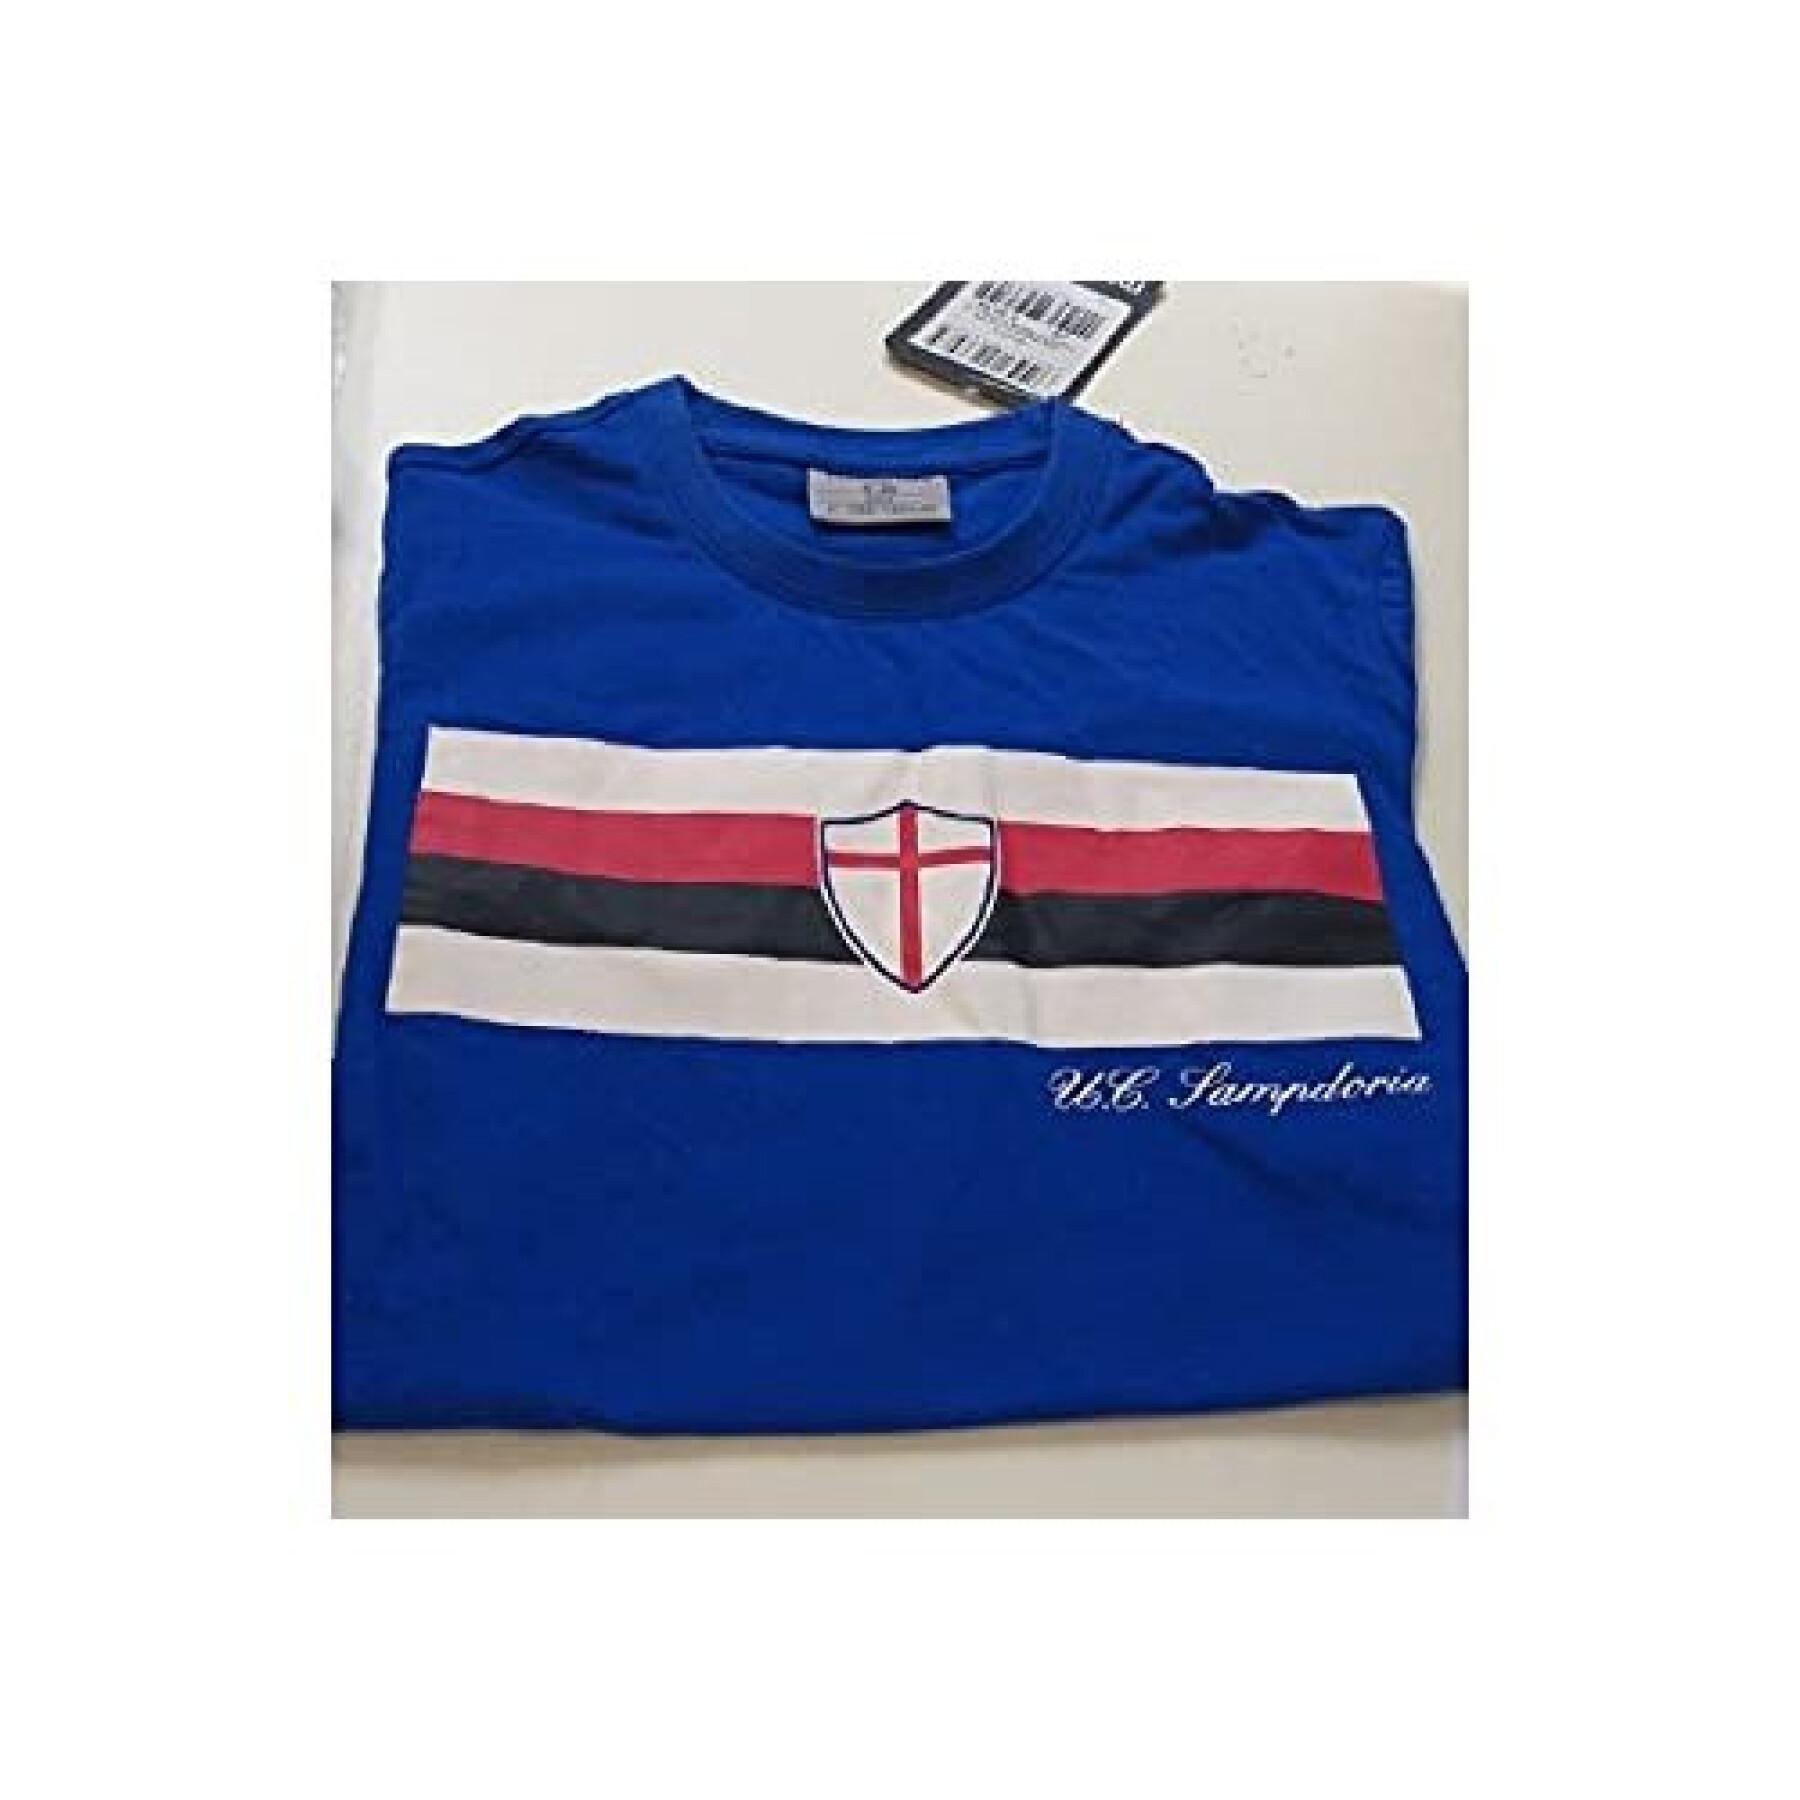 T-shirt coton UC Sampdoria